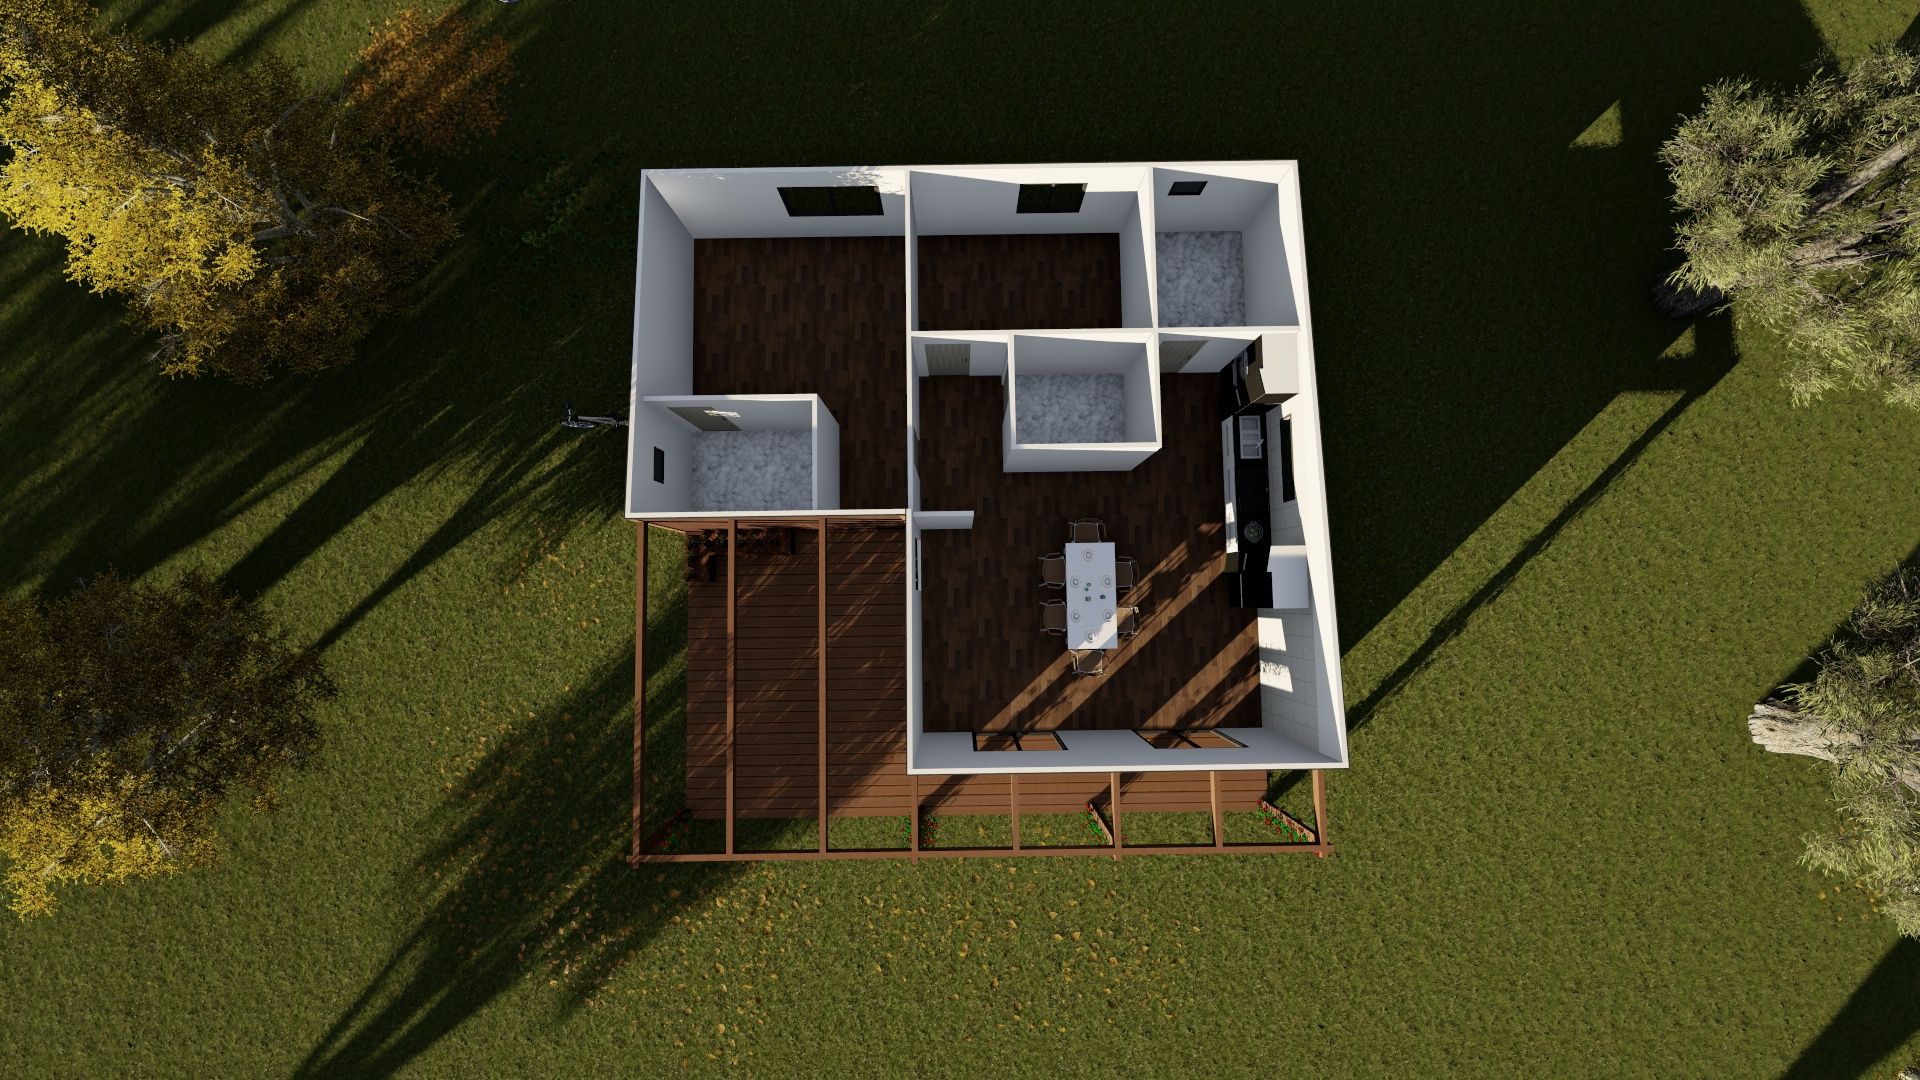 Casa modular de tipologia T2 com 123m², Discovercasa | Casas de Madeira & Modulares Discovercasa | Casas de Madeira & Modulares Casas prefabricadas Madera Acabado en madera